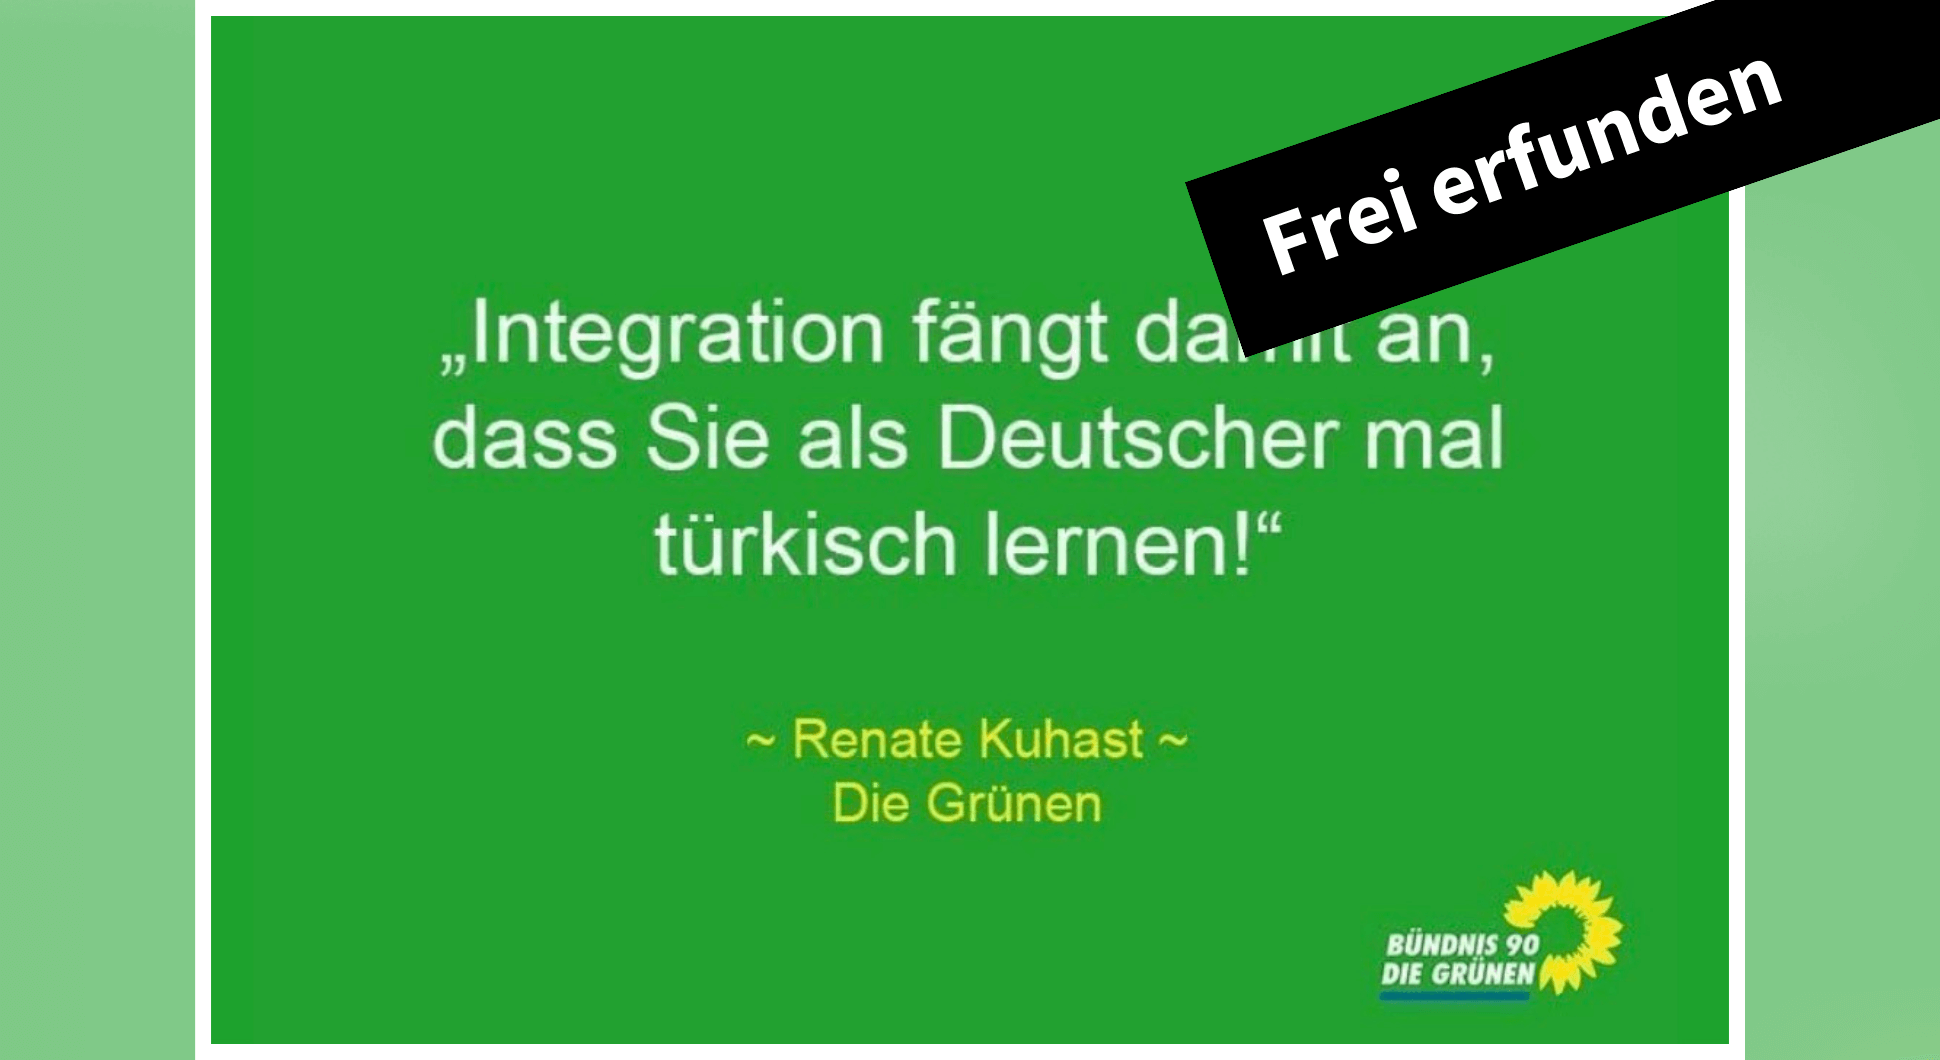 Falschzitat von Renate Künast auf Facebook: Integration fängt damit an dass Sie als Deutscher mal türkisch lernen